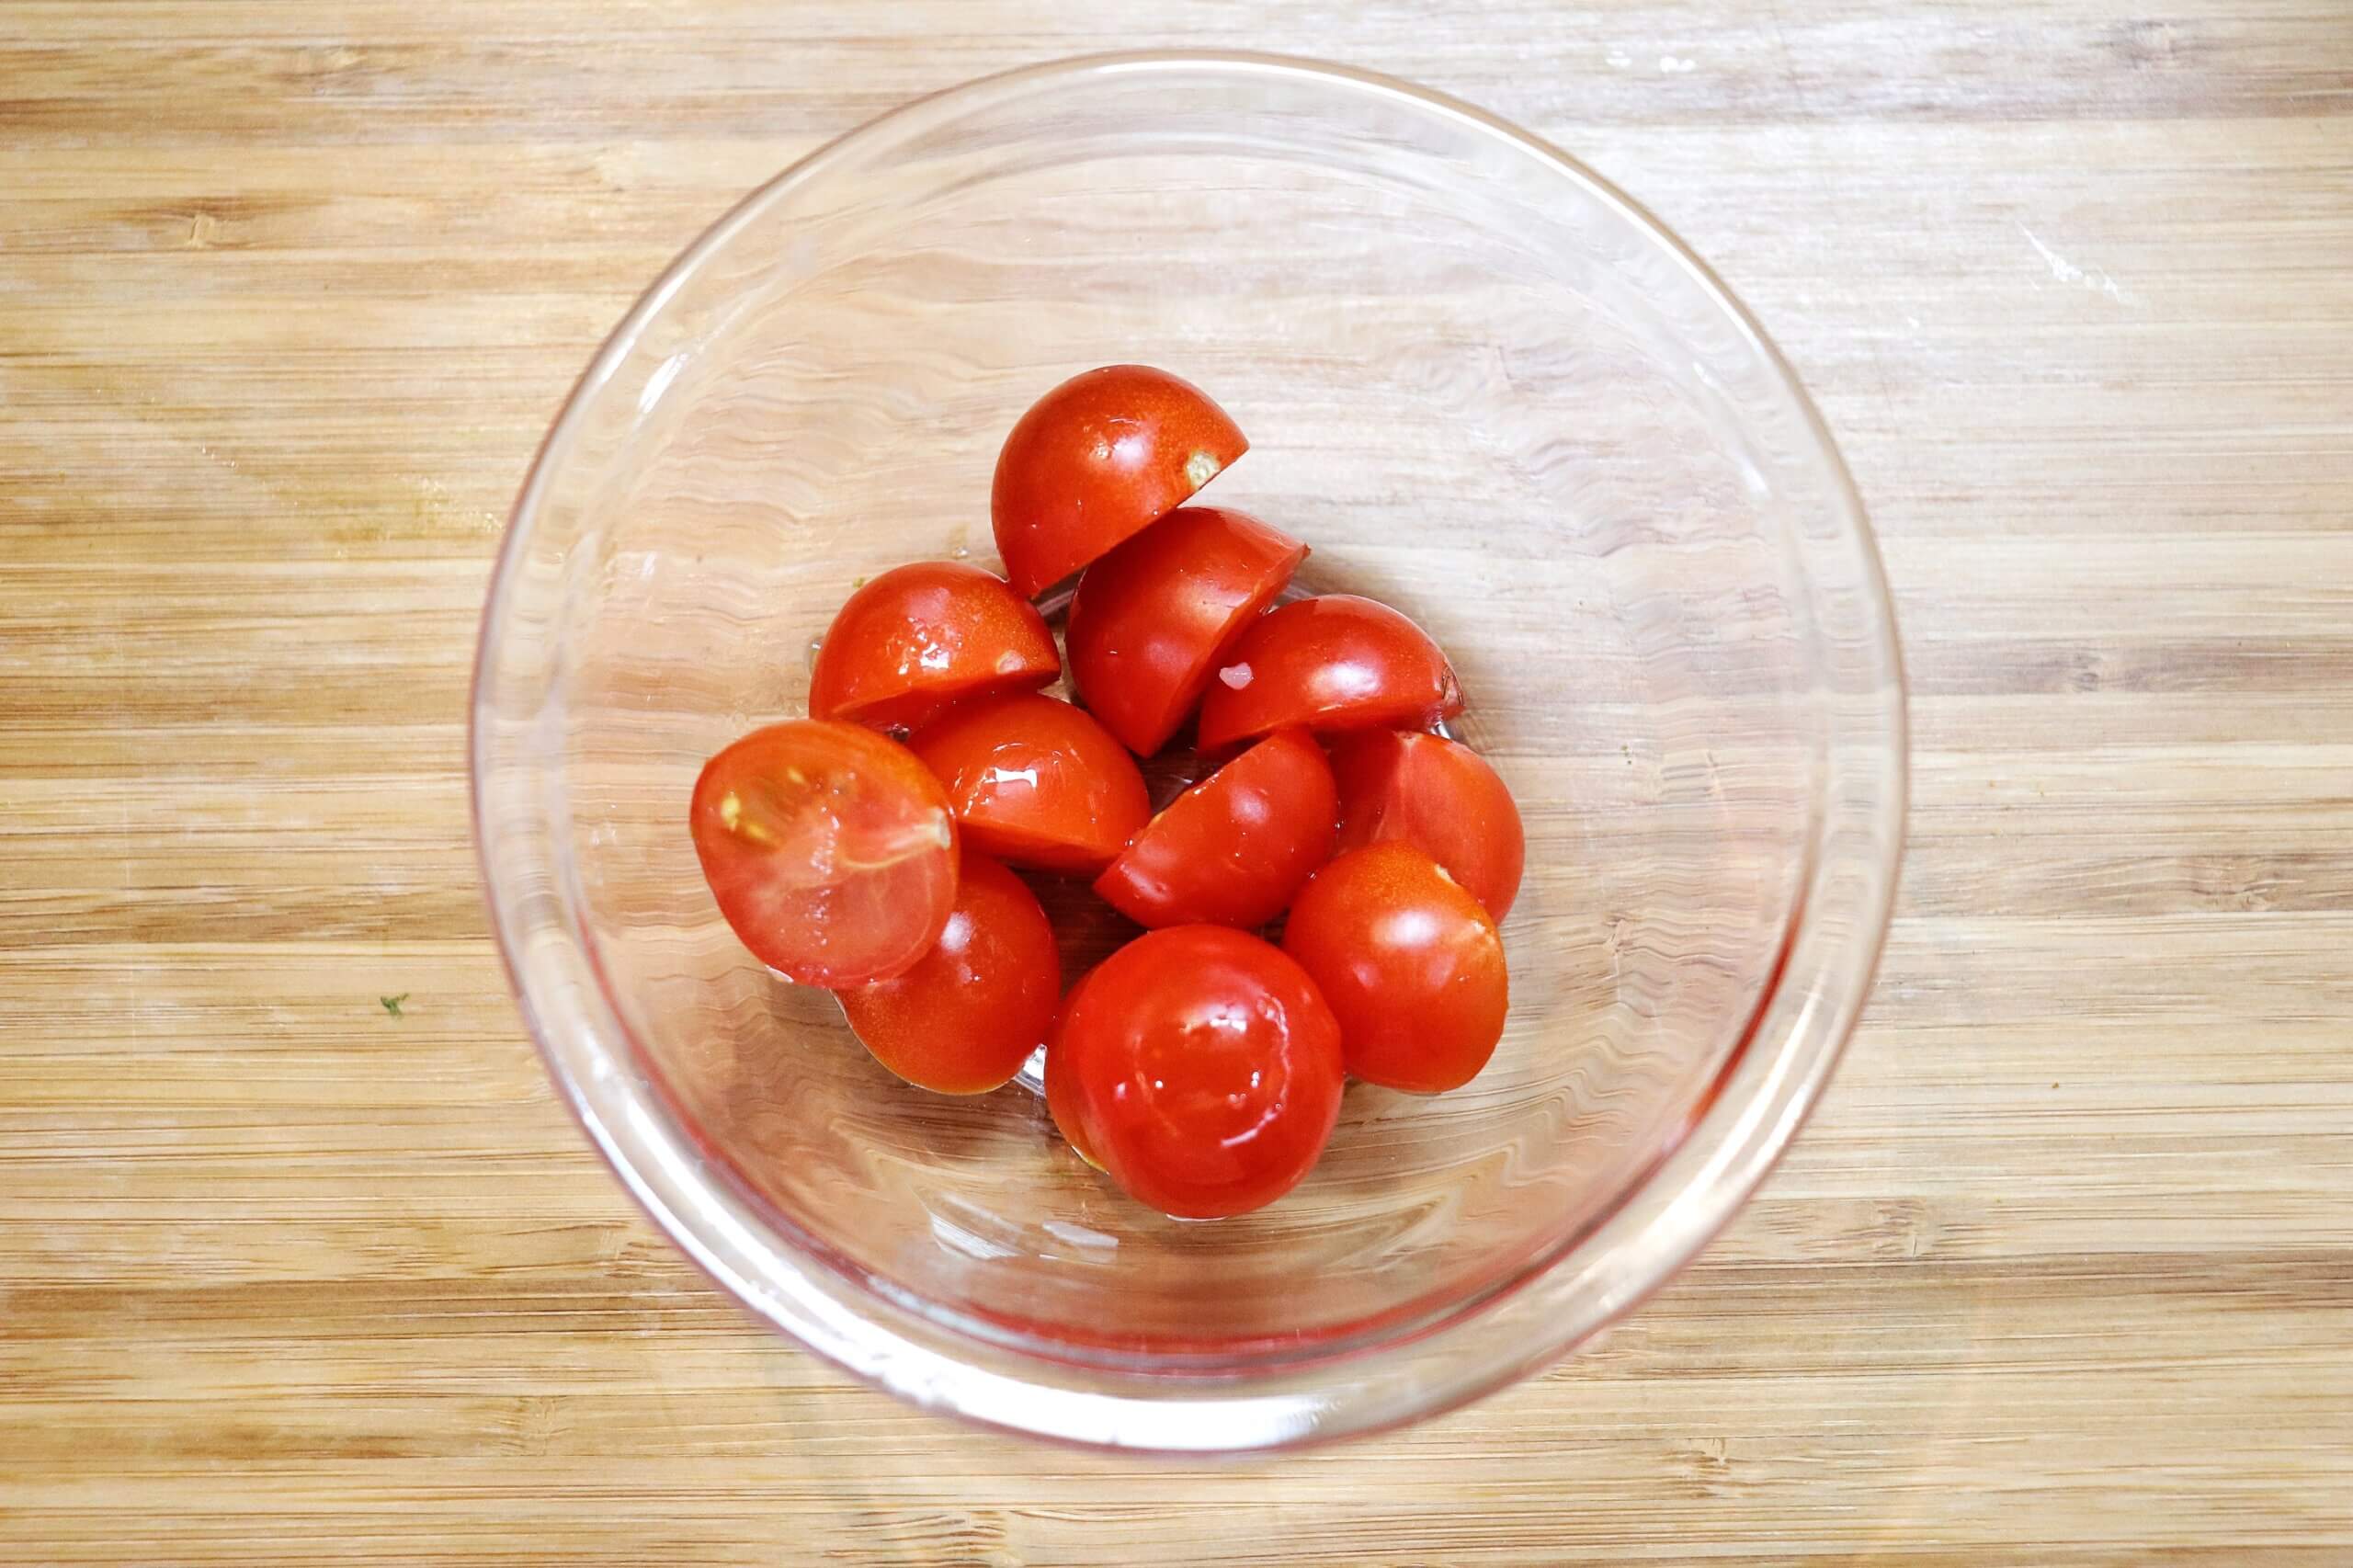 プチトマトは半分に切る